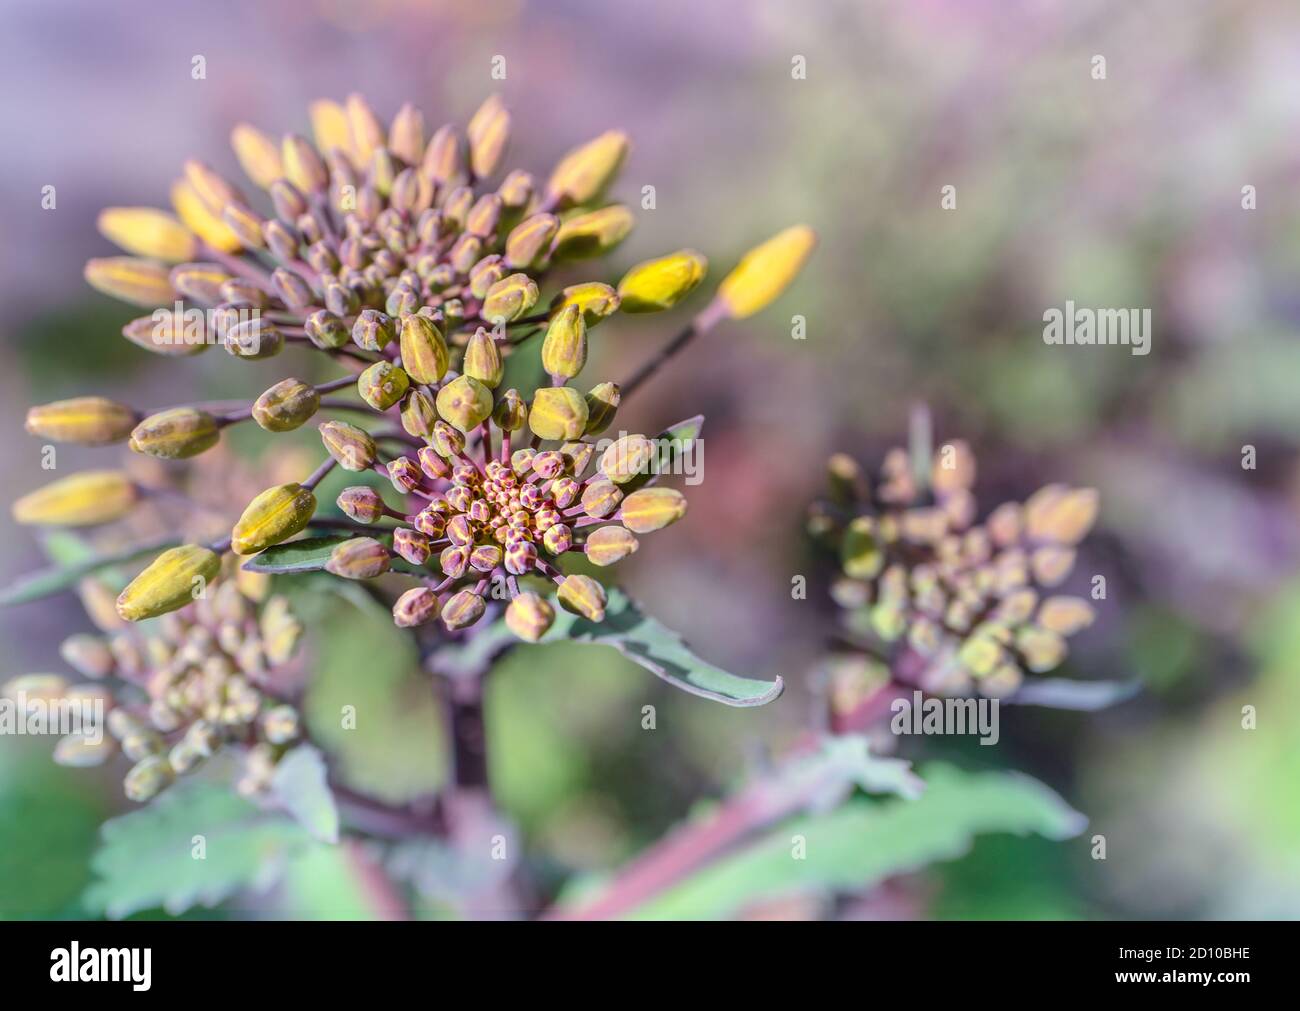 Primo piano di Red Russian Kale gemme (Brassica oleracea) pronti a fiorire. Bellissimo scatto di dettaglio di boccioli chiusi di colore giallo e viola con steli viola. Foto Stock